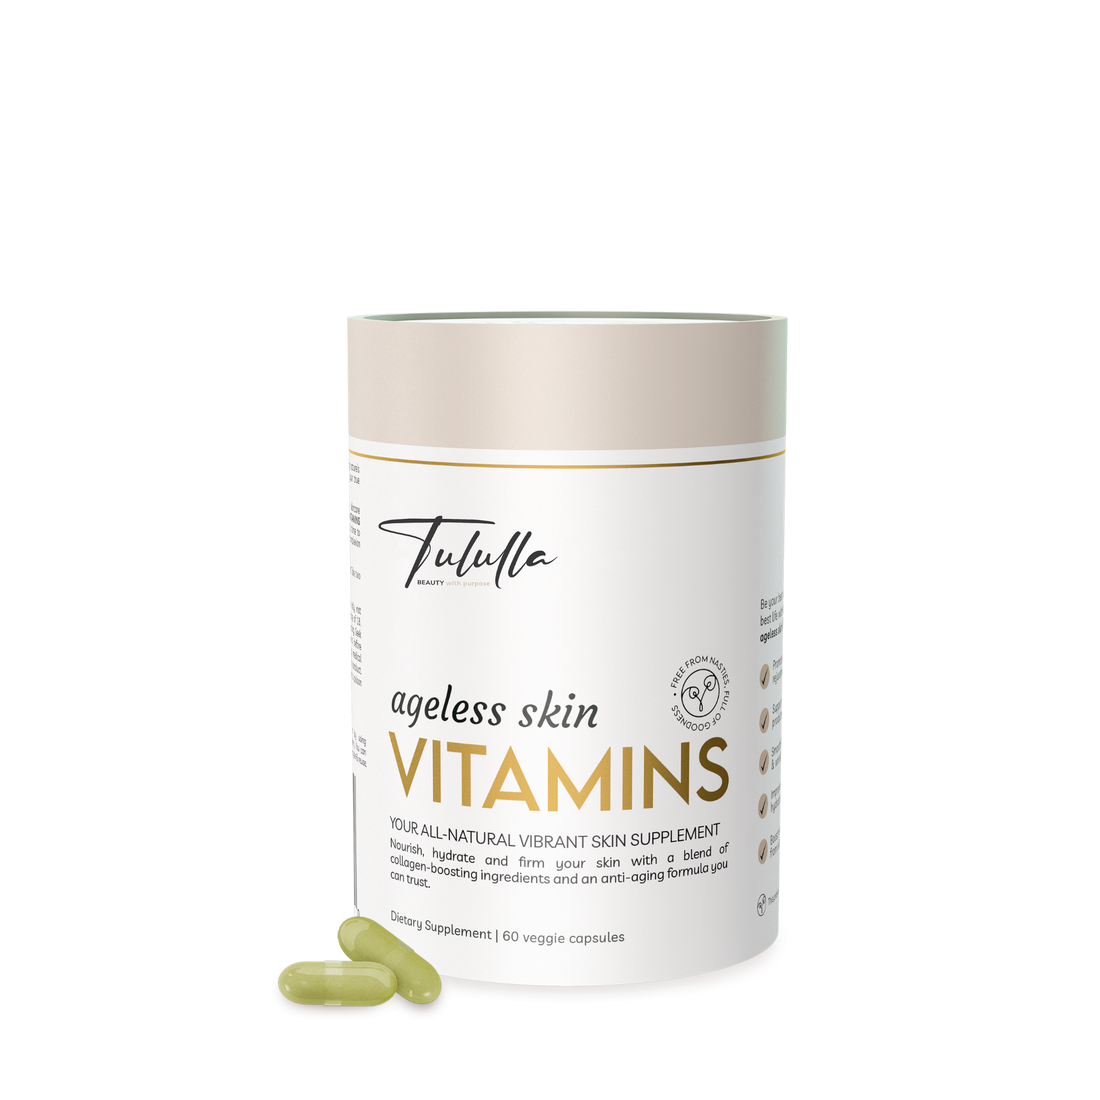 Tululla Ageless Skin Vitamin Capsules